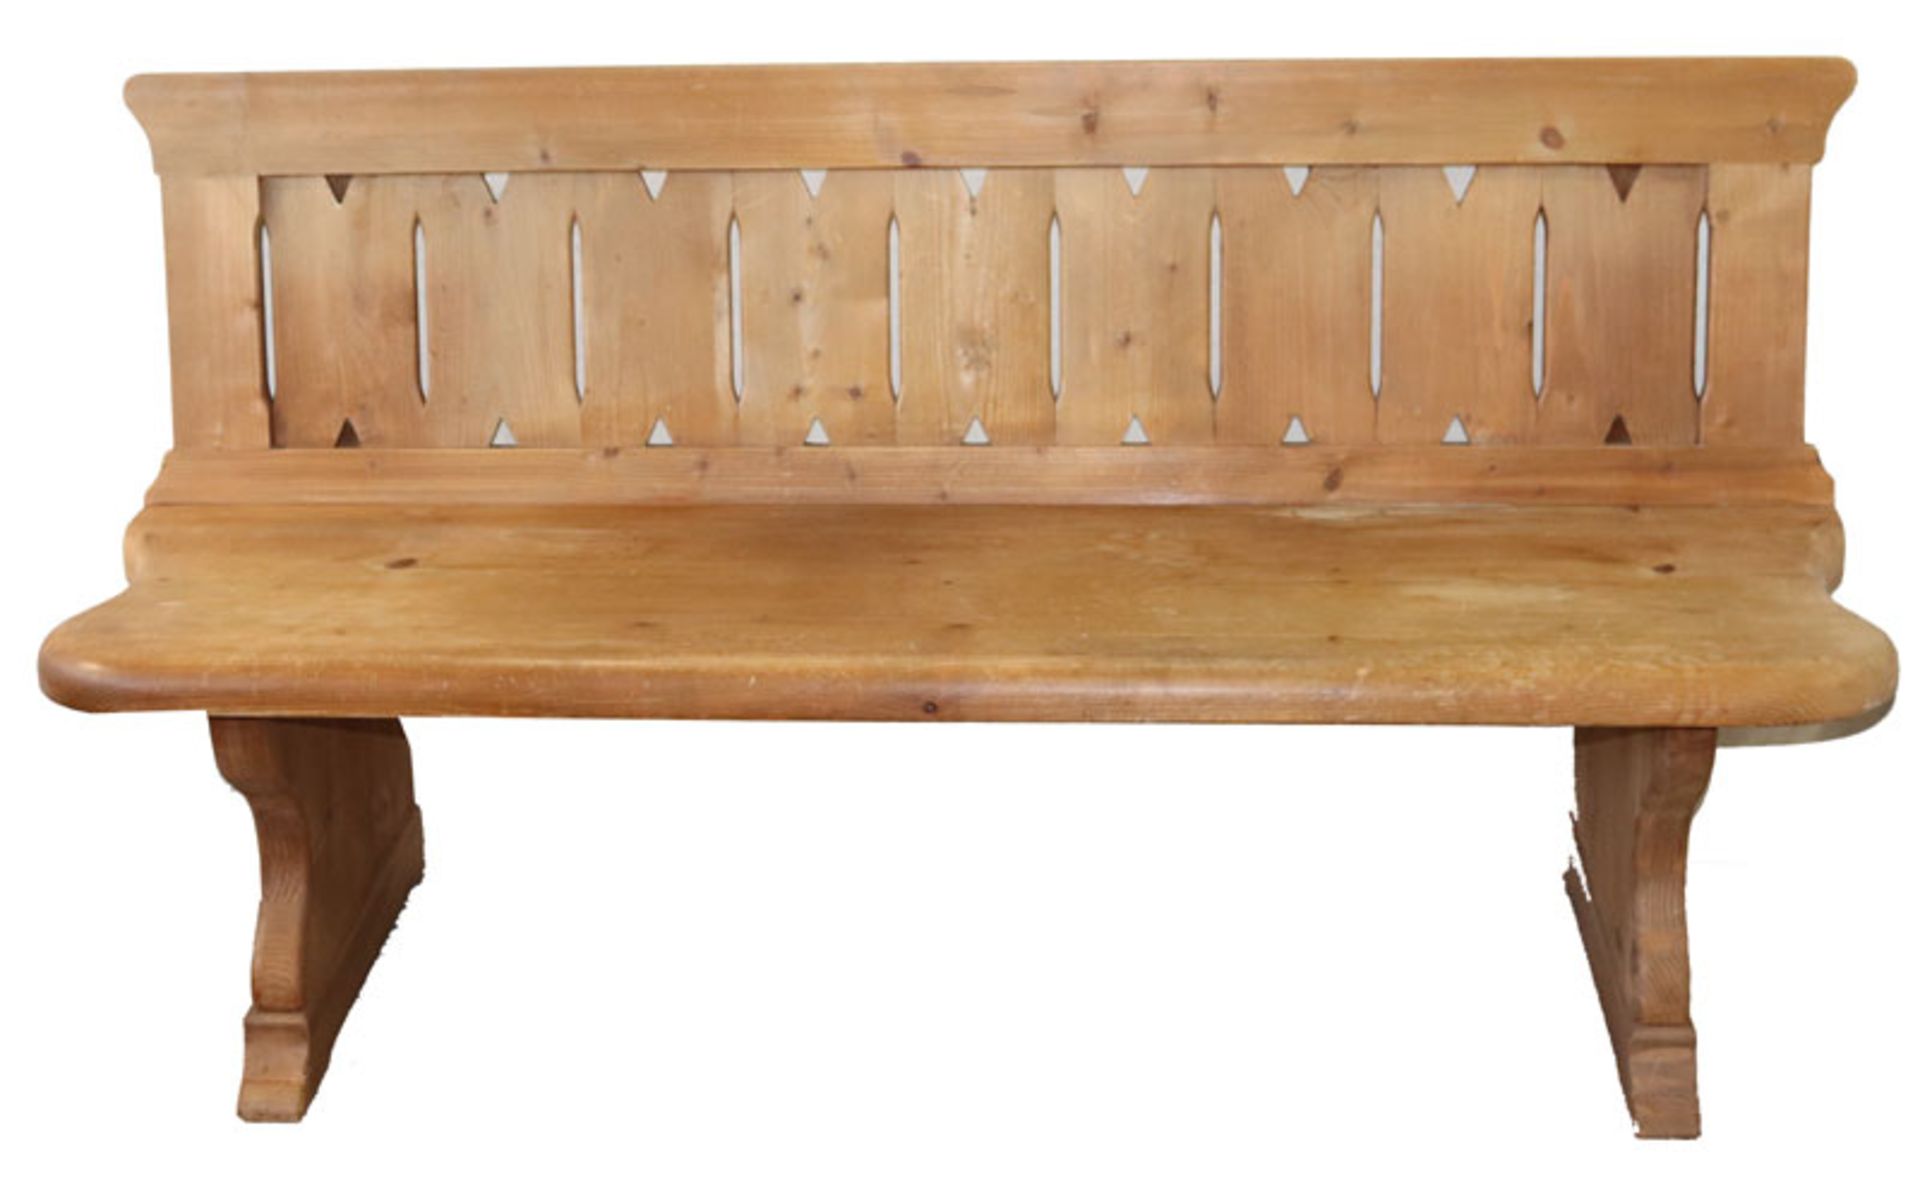 Holzbank mit Lehne, H 86 cm, B 162 cm, T 45 cm, Gebrauchsspuren